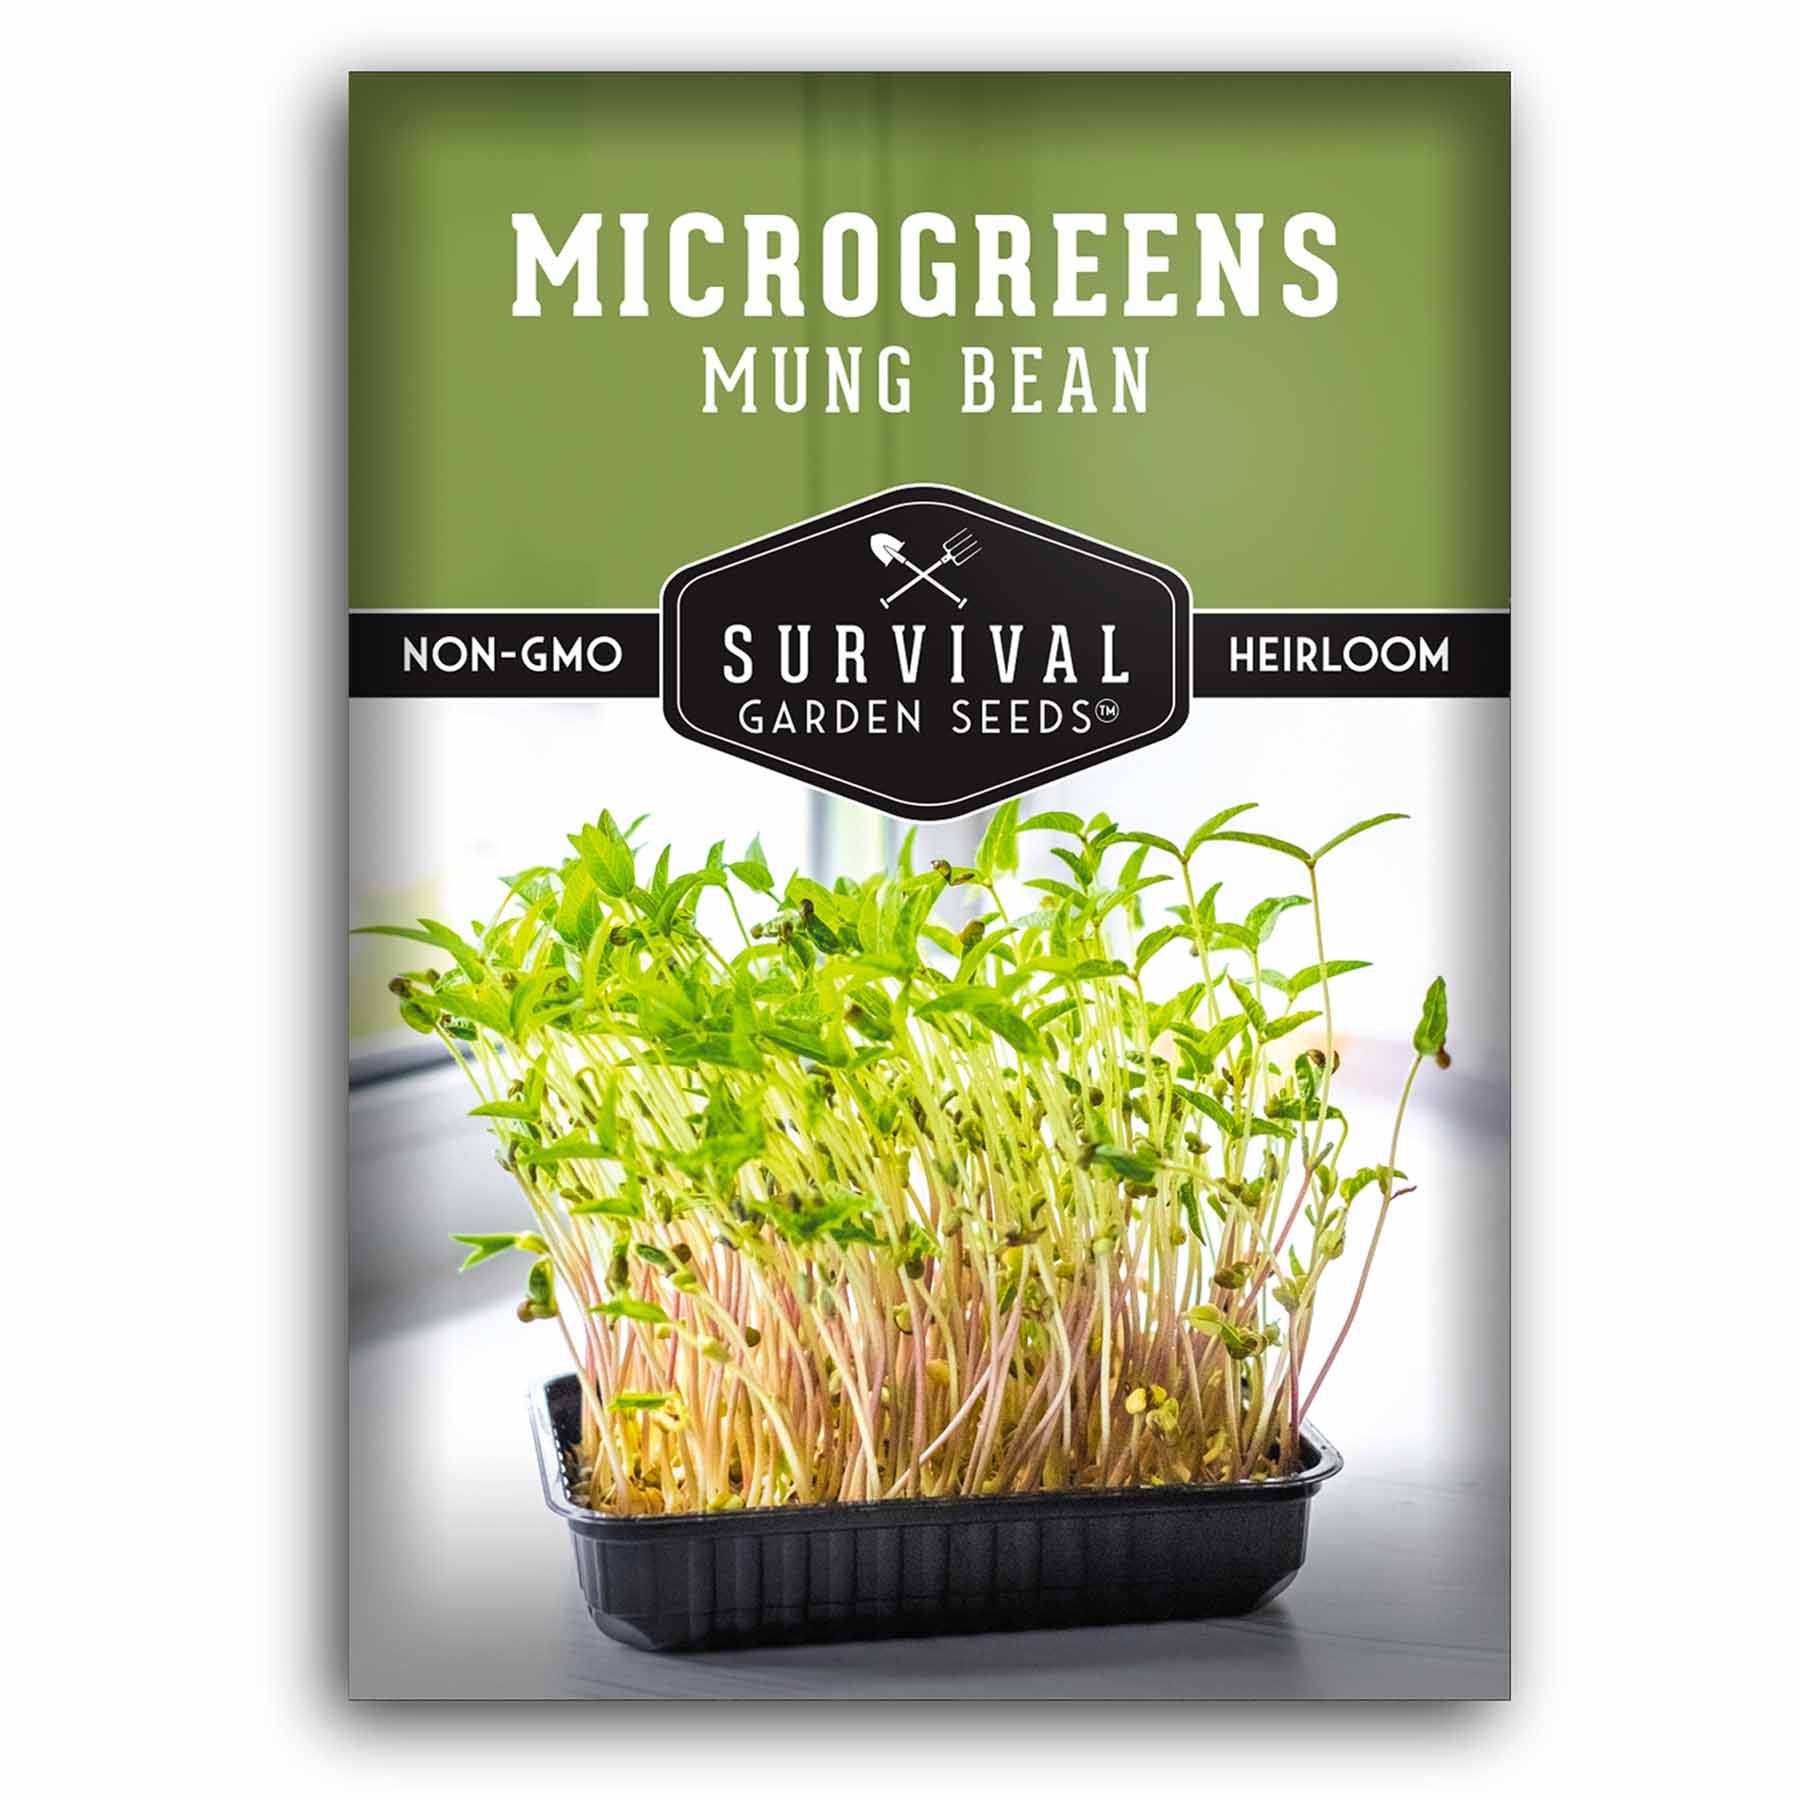 1 packet of Mung Bean microgreens seeds